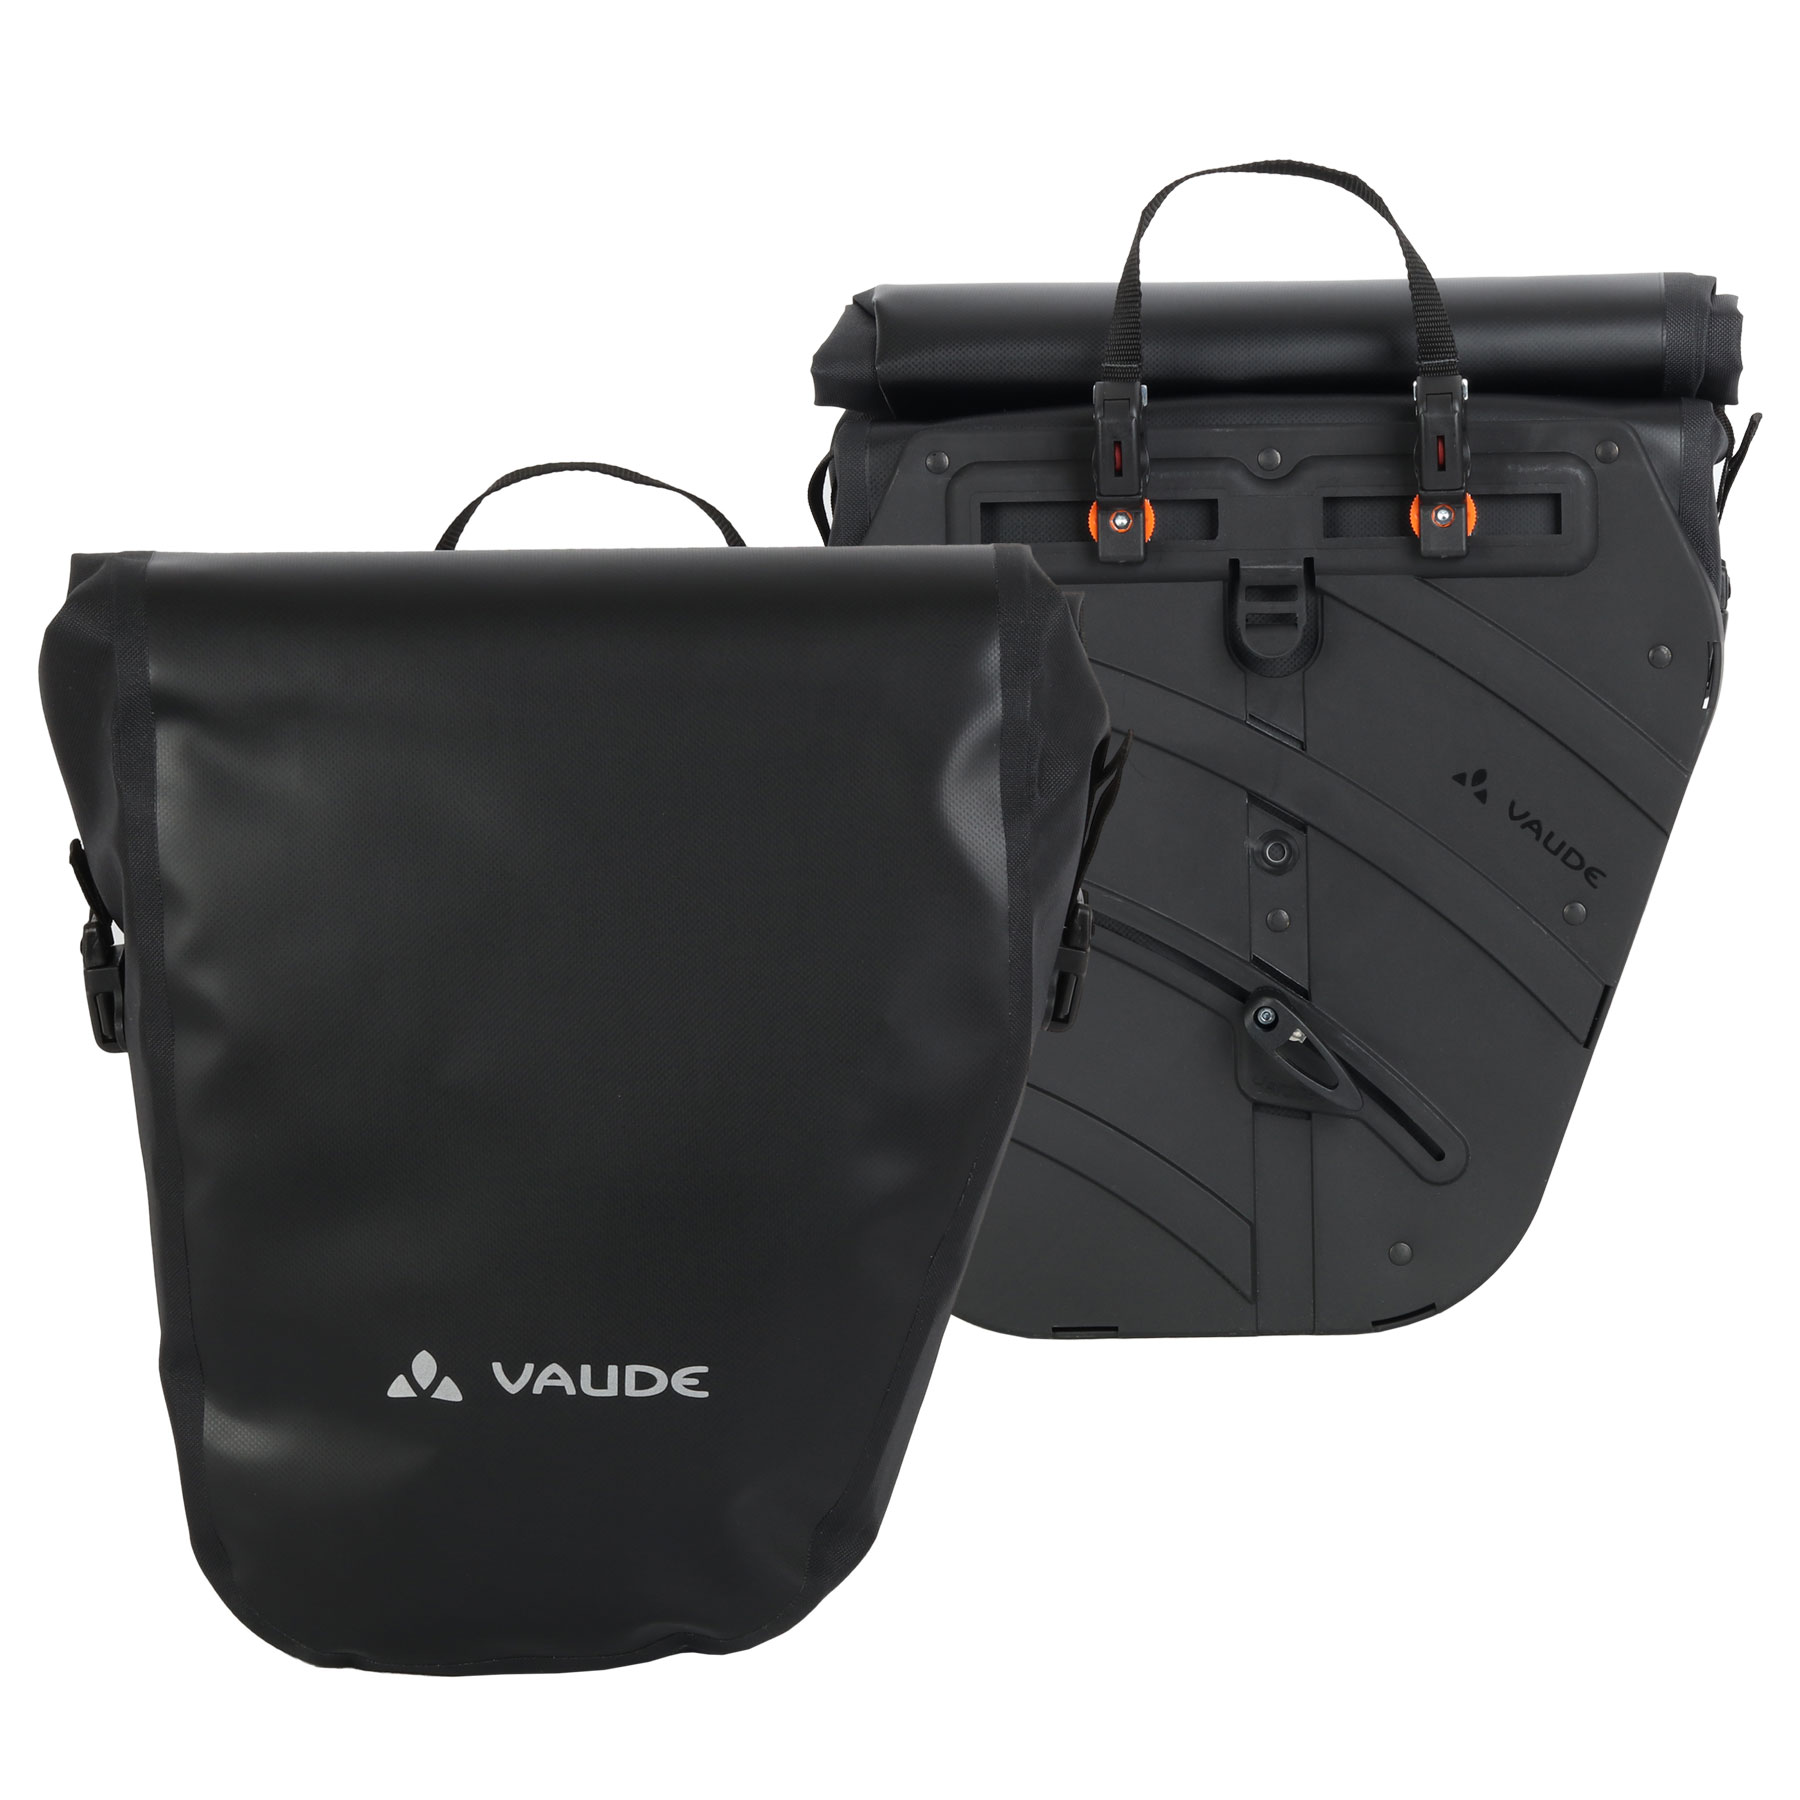 Produktbild von Vaude World Tramp Fahrradtasche (Paar) - 2x24L - schwarz